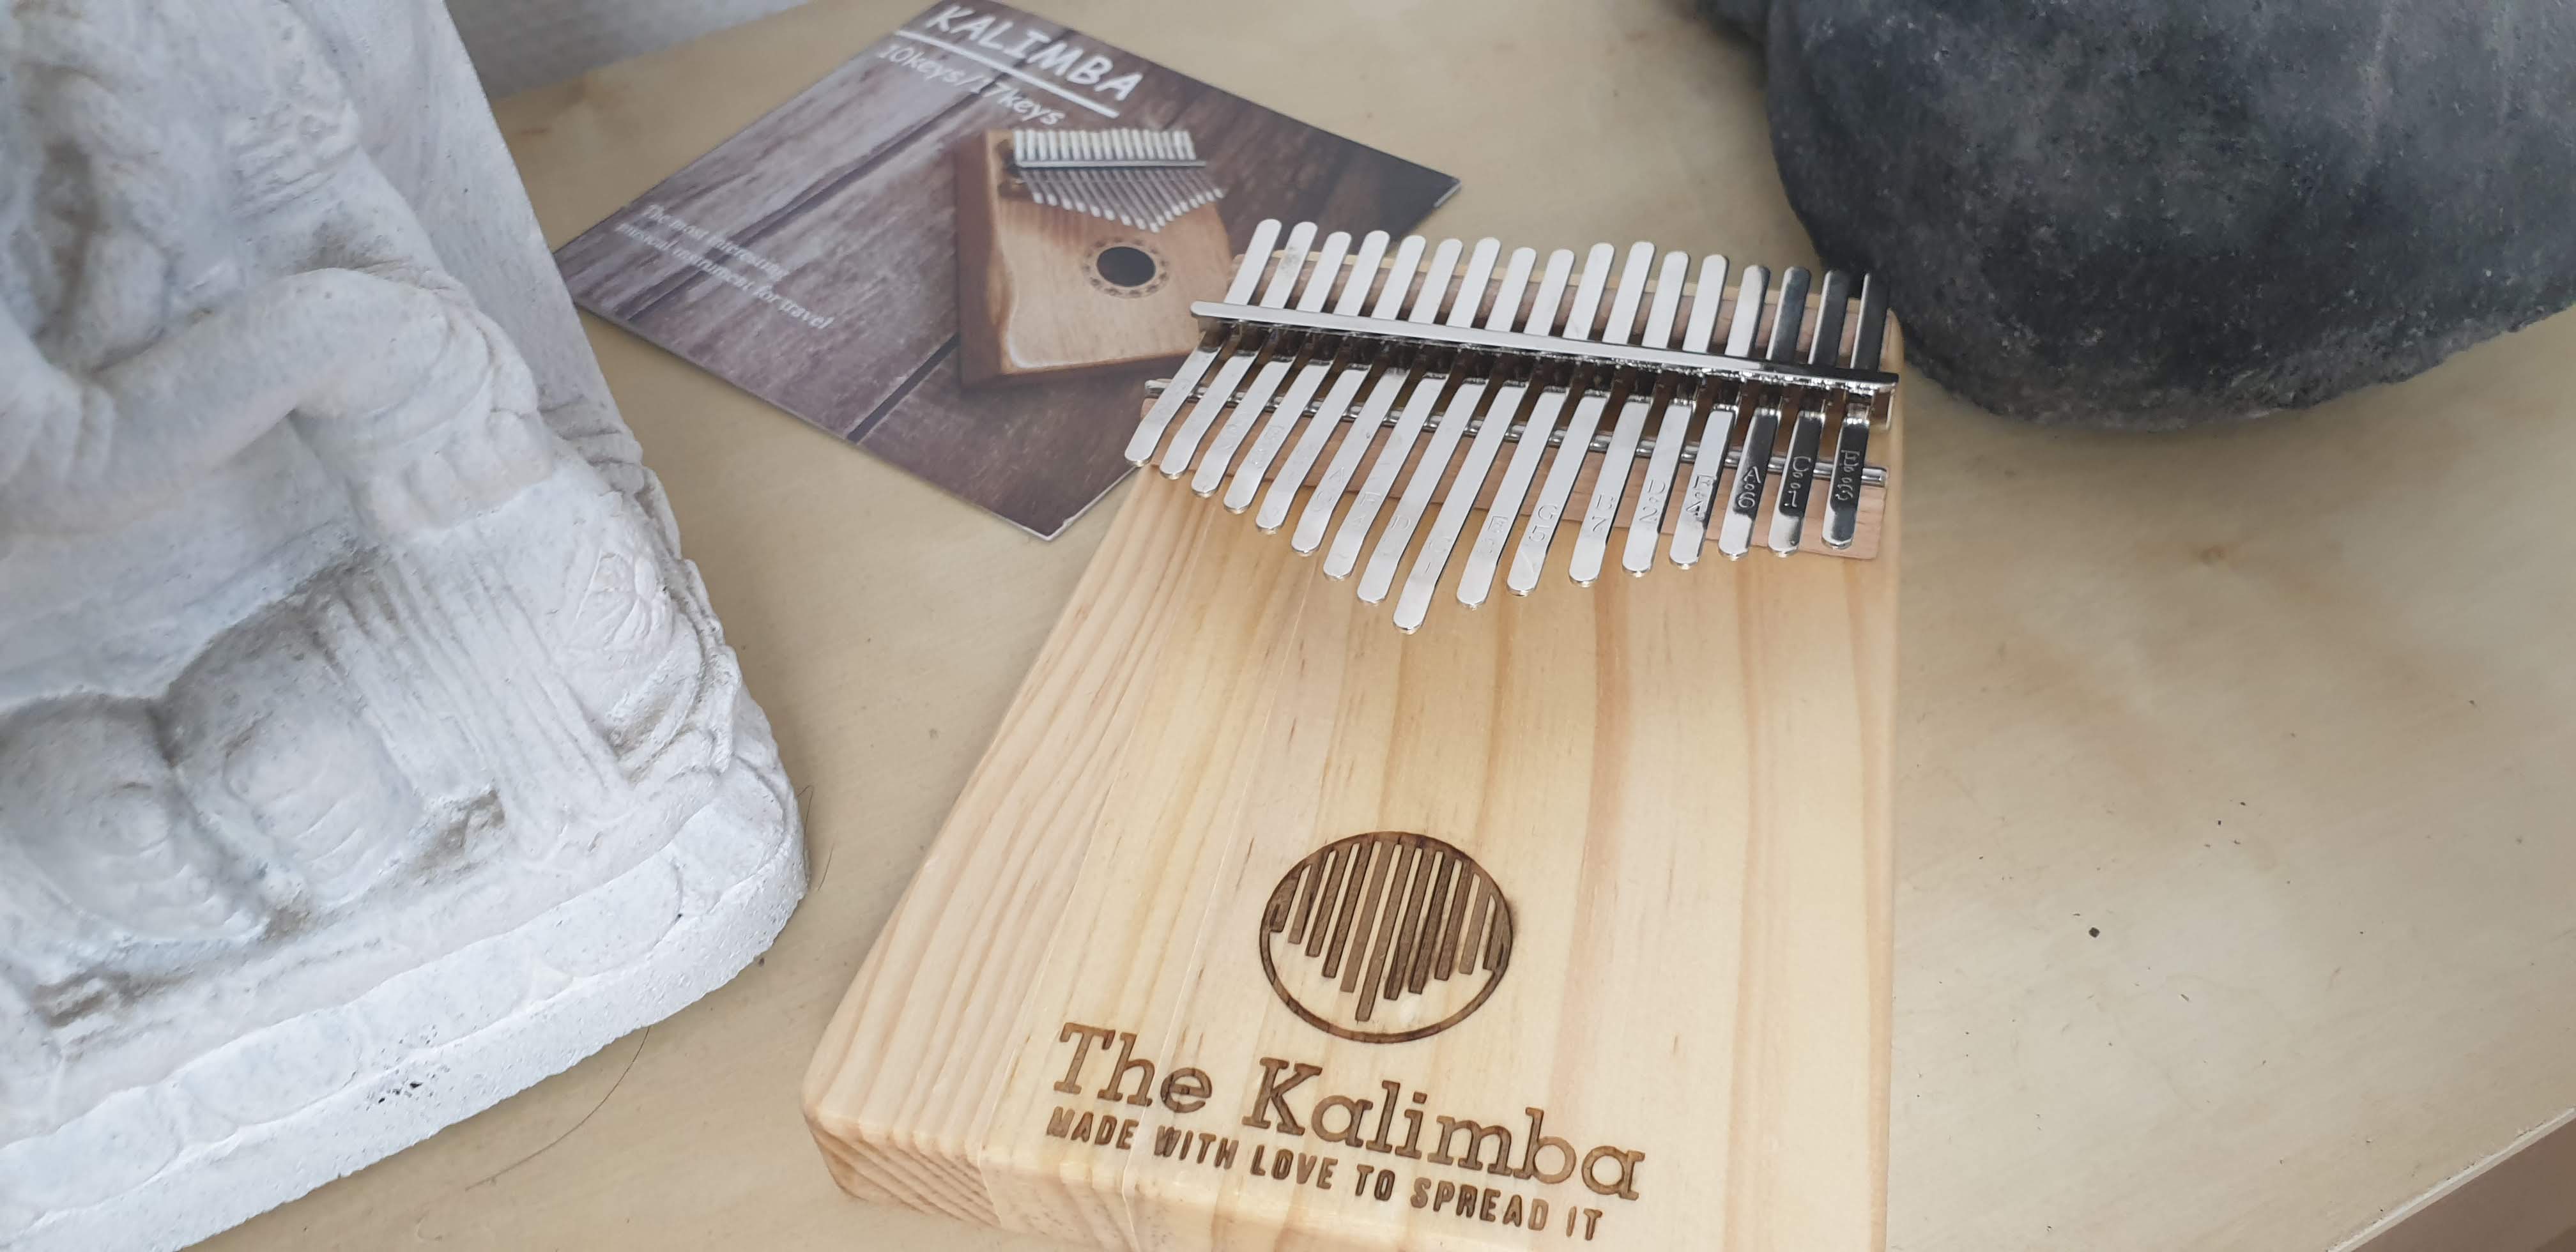 thekalimba® strumento kalimba a 17 note